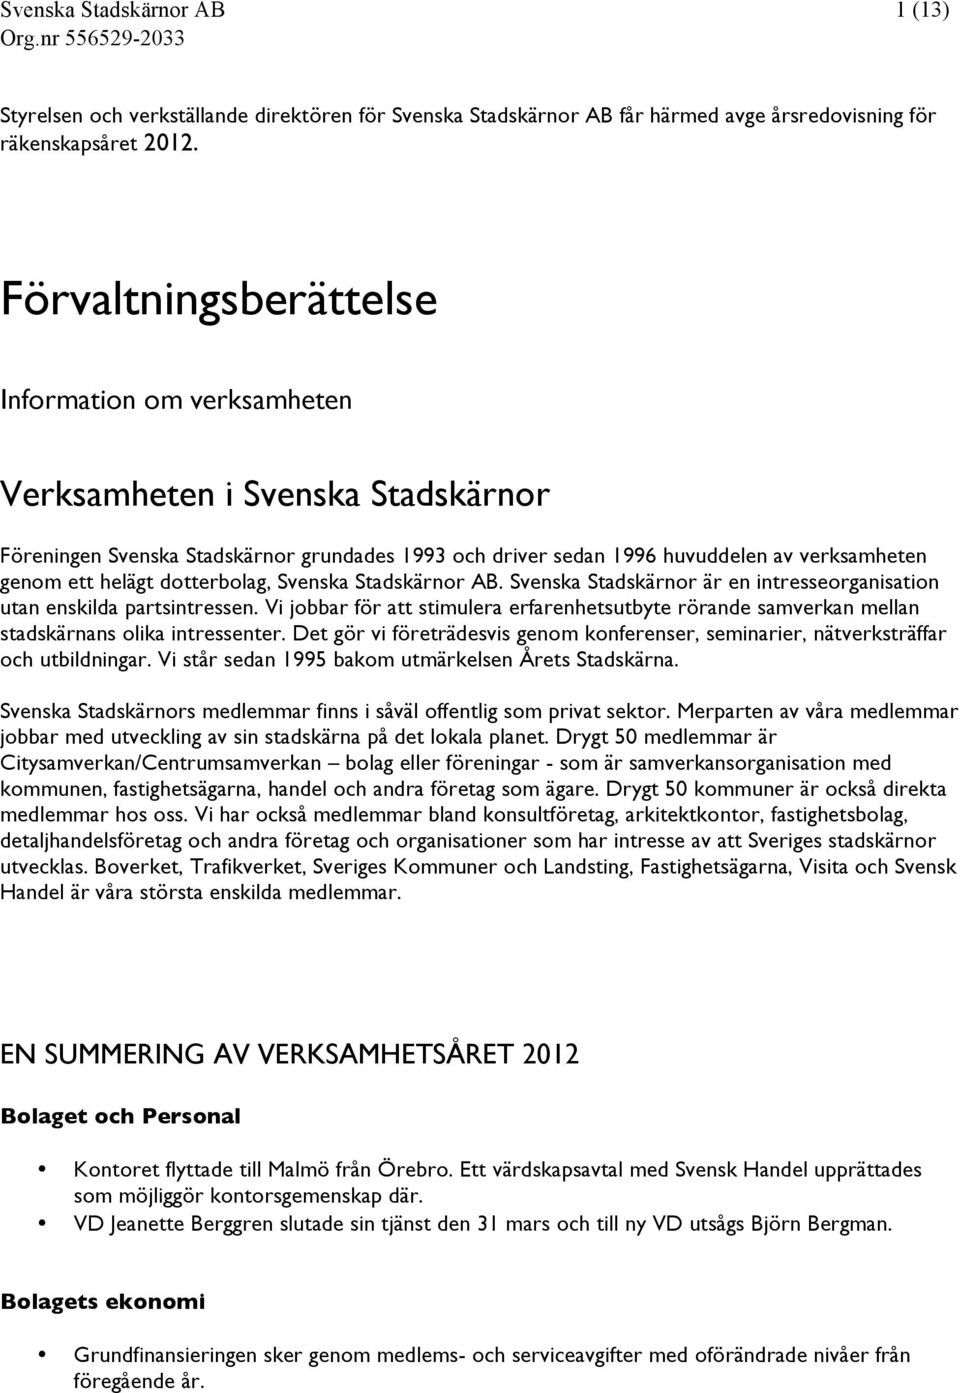 dotterbolag, Svenska Stadskärnor AB. Svenska Stadskärnor är en intresseorganisation utan enskilda partsintressen.